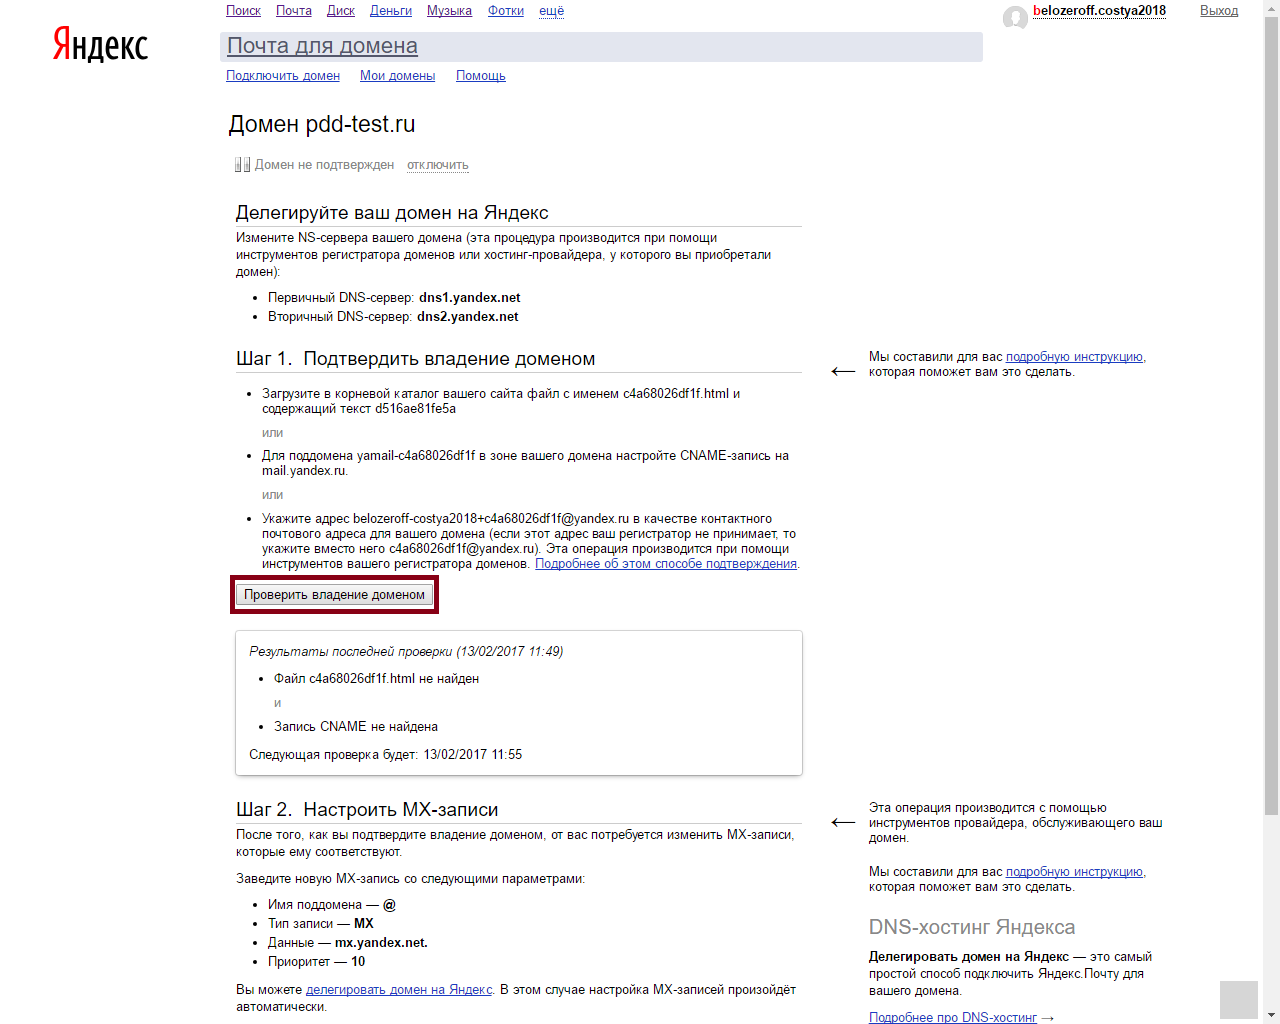 Проверка делегированного домена на Яндекс